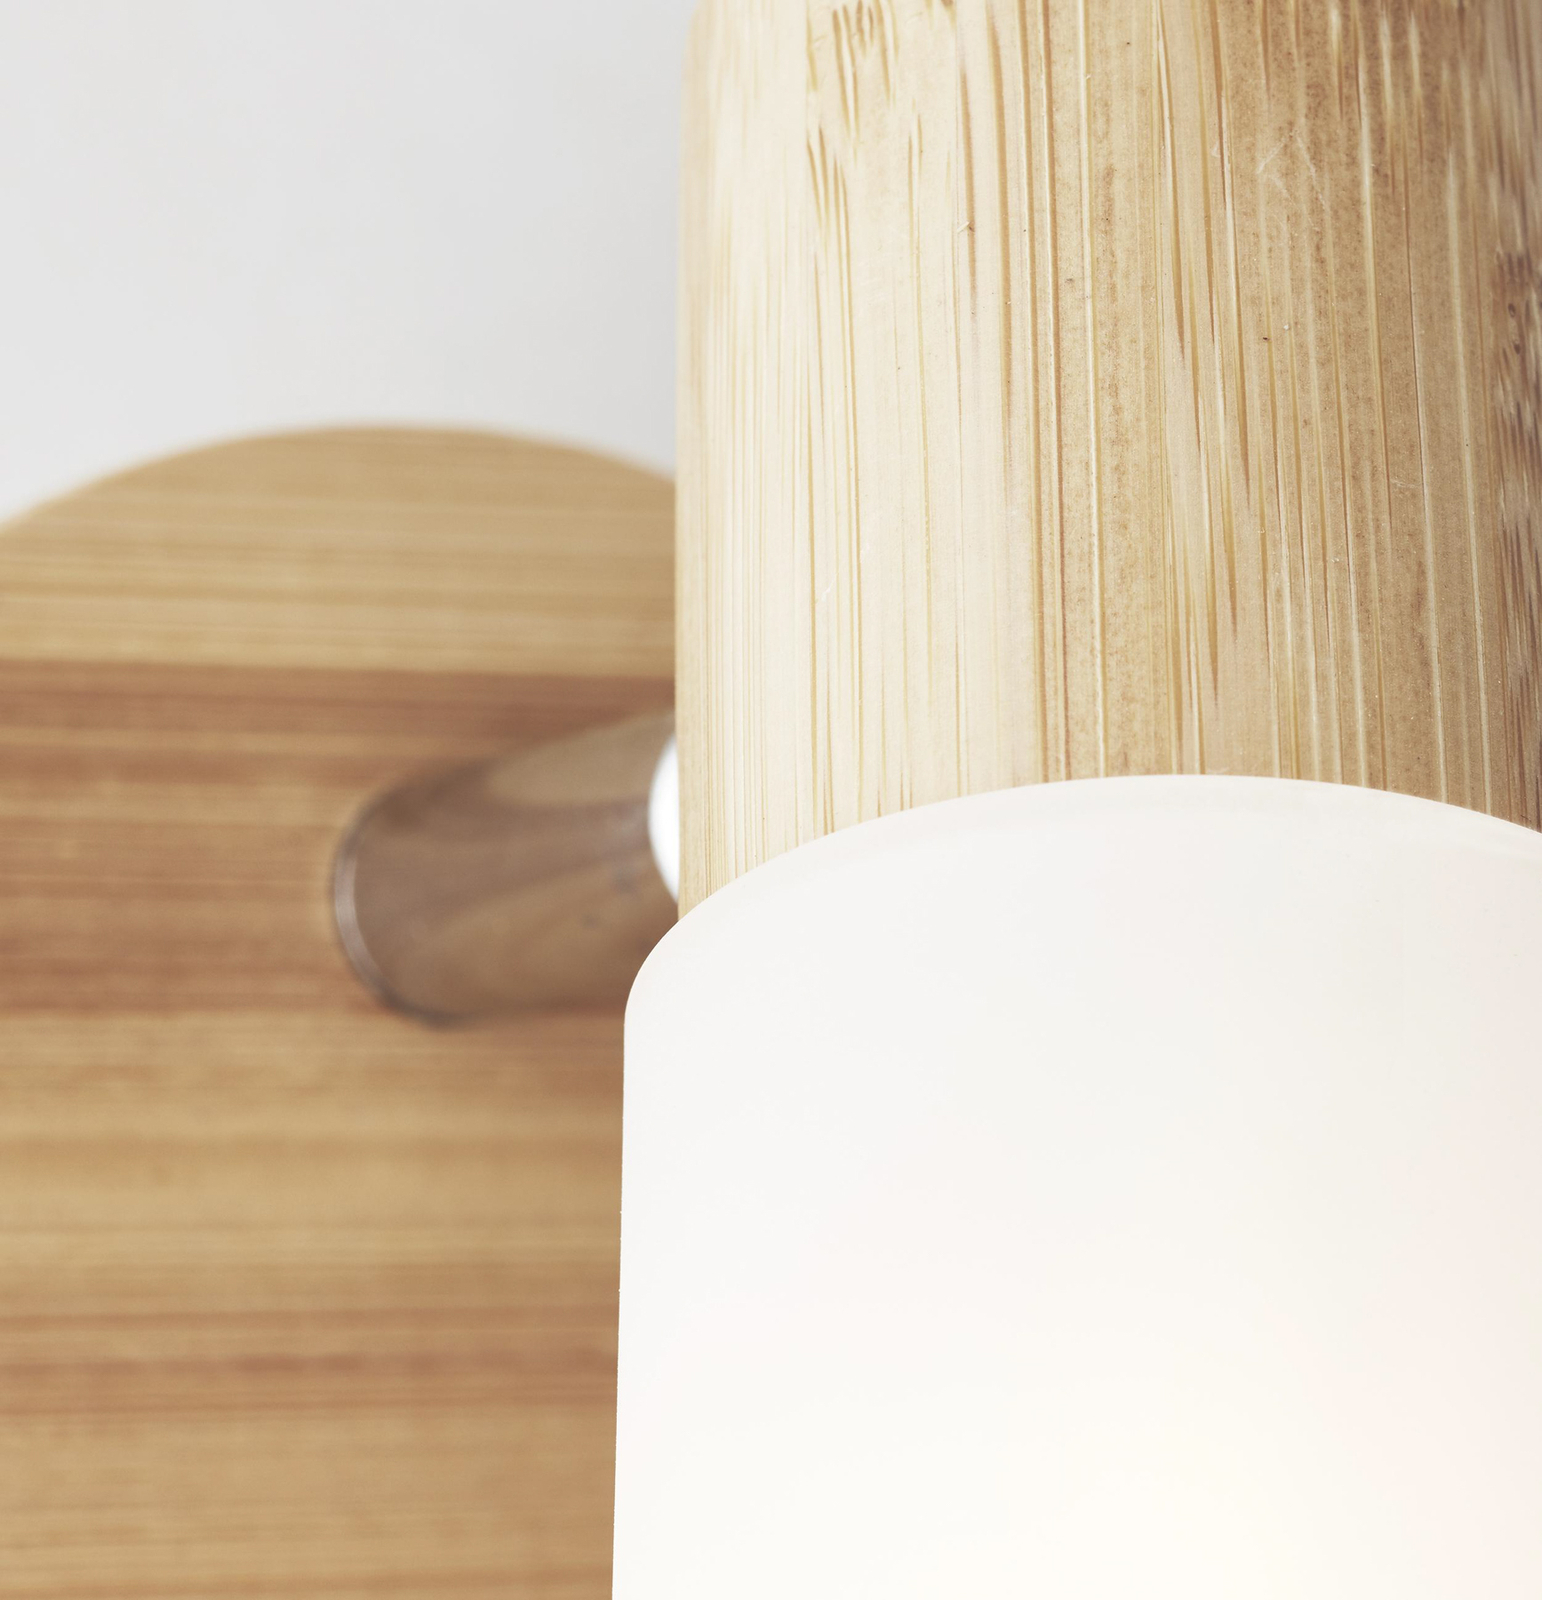 Babsan väggspotlight, Ø 10 cm, ljust trä, bambu